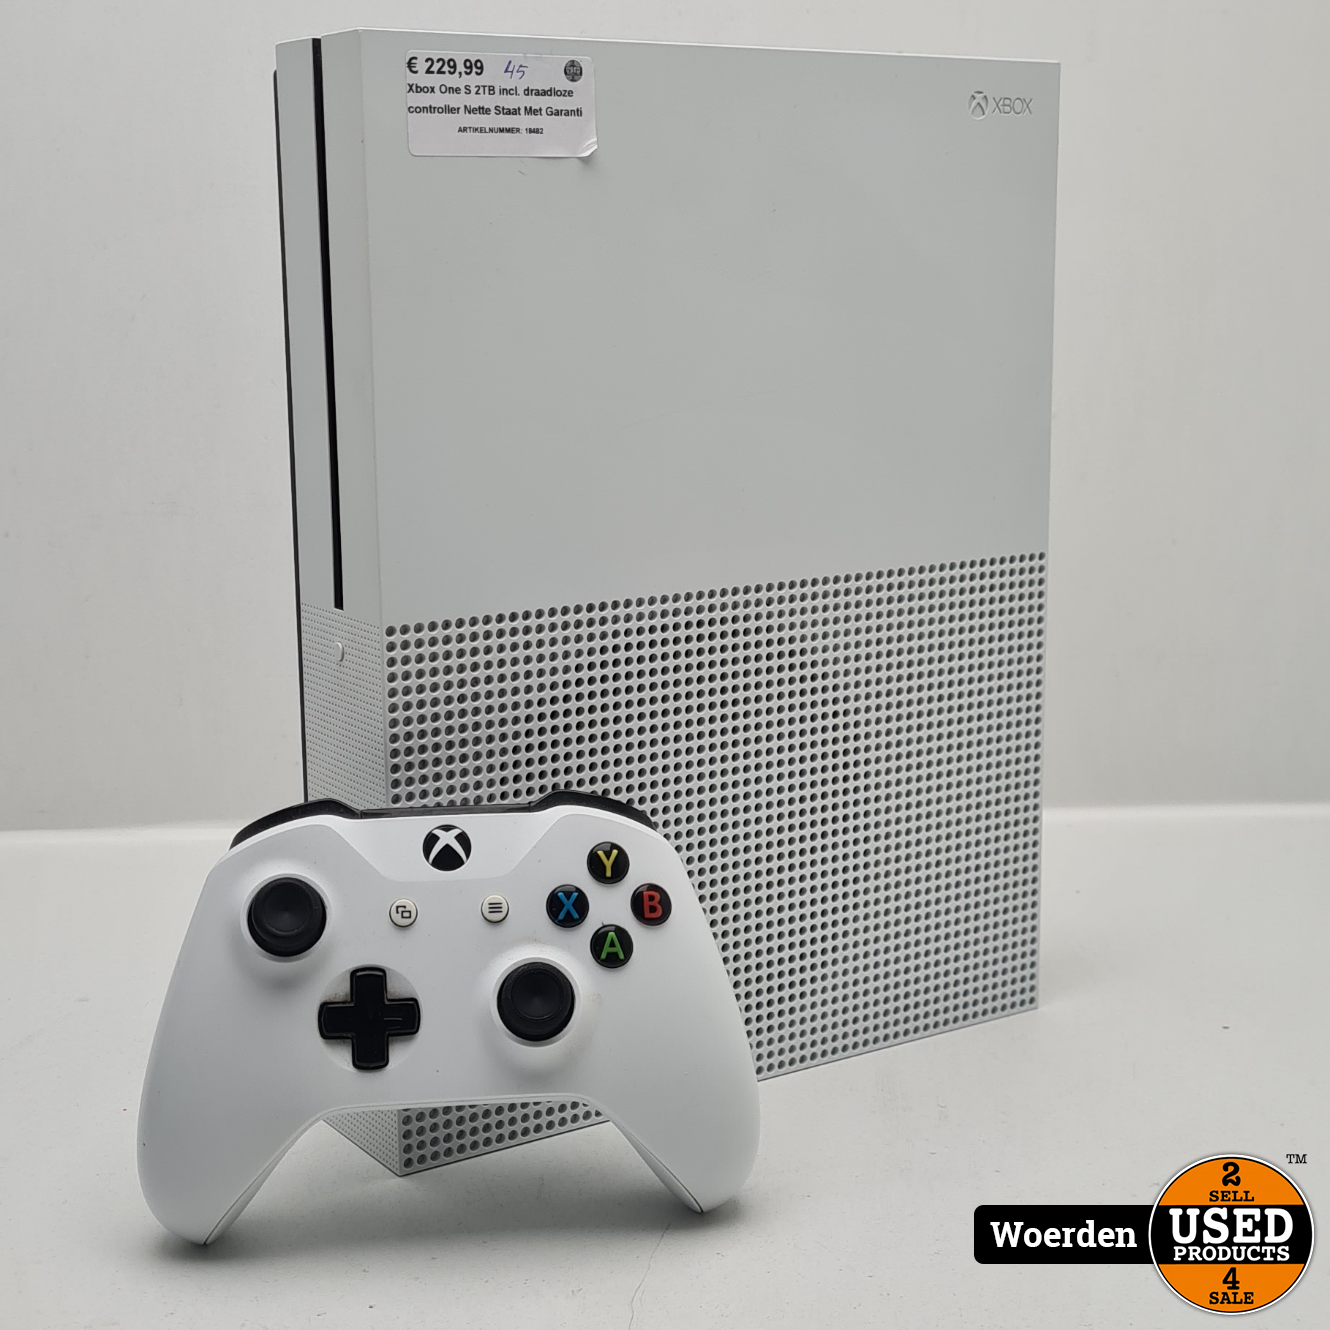 Afsnijden Afkorting enkel en alleen xbox one Xbox One S 2TB incl. draadloze controller Nette Staat Met Garantie  - Used Products Woerden